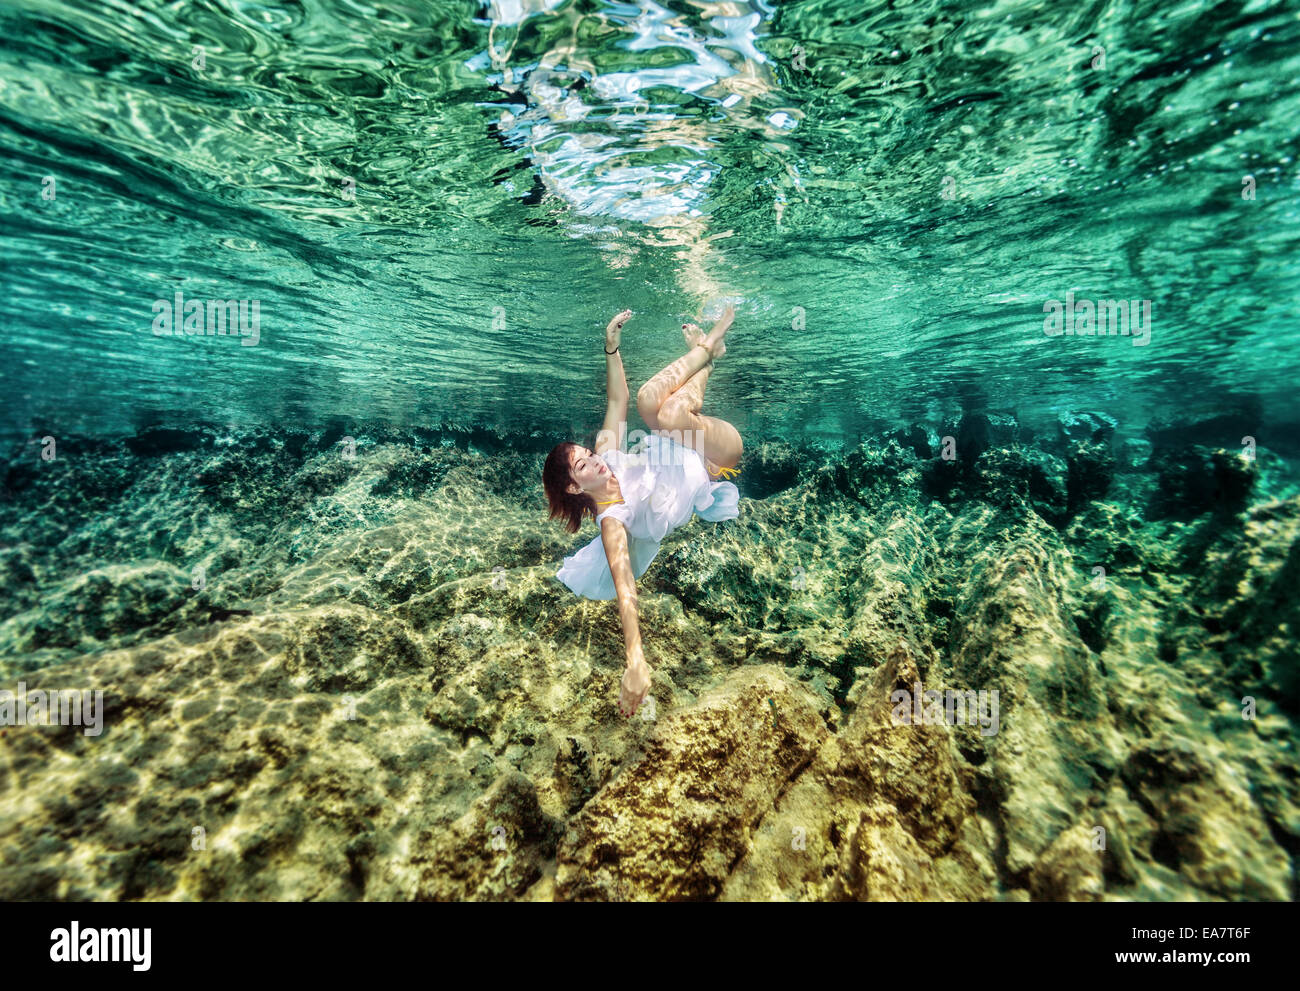 Aktive Frau mit Freude Schwimmen unter Wasser, schöne Korallen Garten, Entspannung im Meer, Sommer Urlaub Konzept Stockfoto